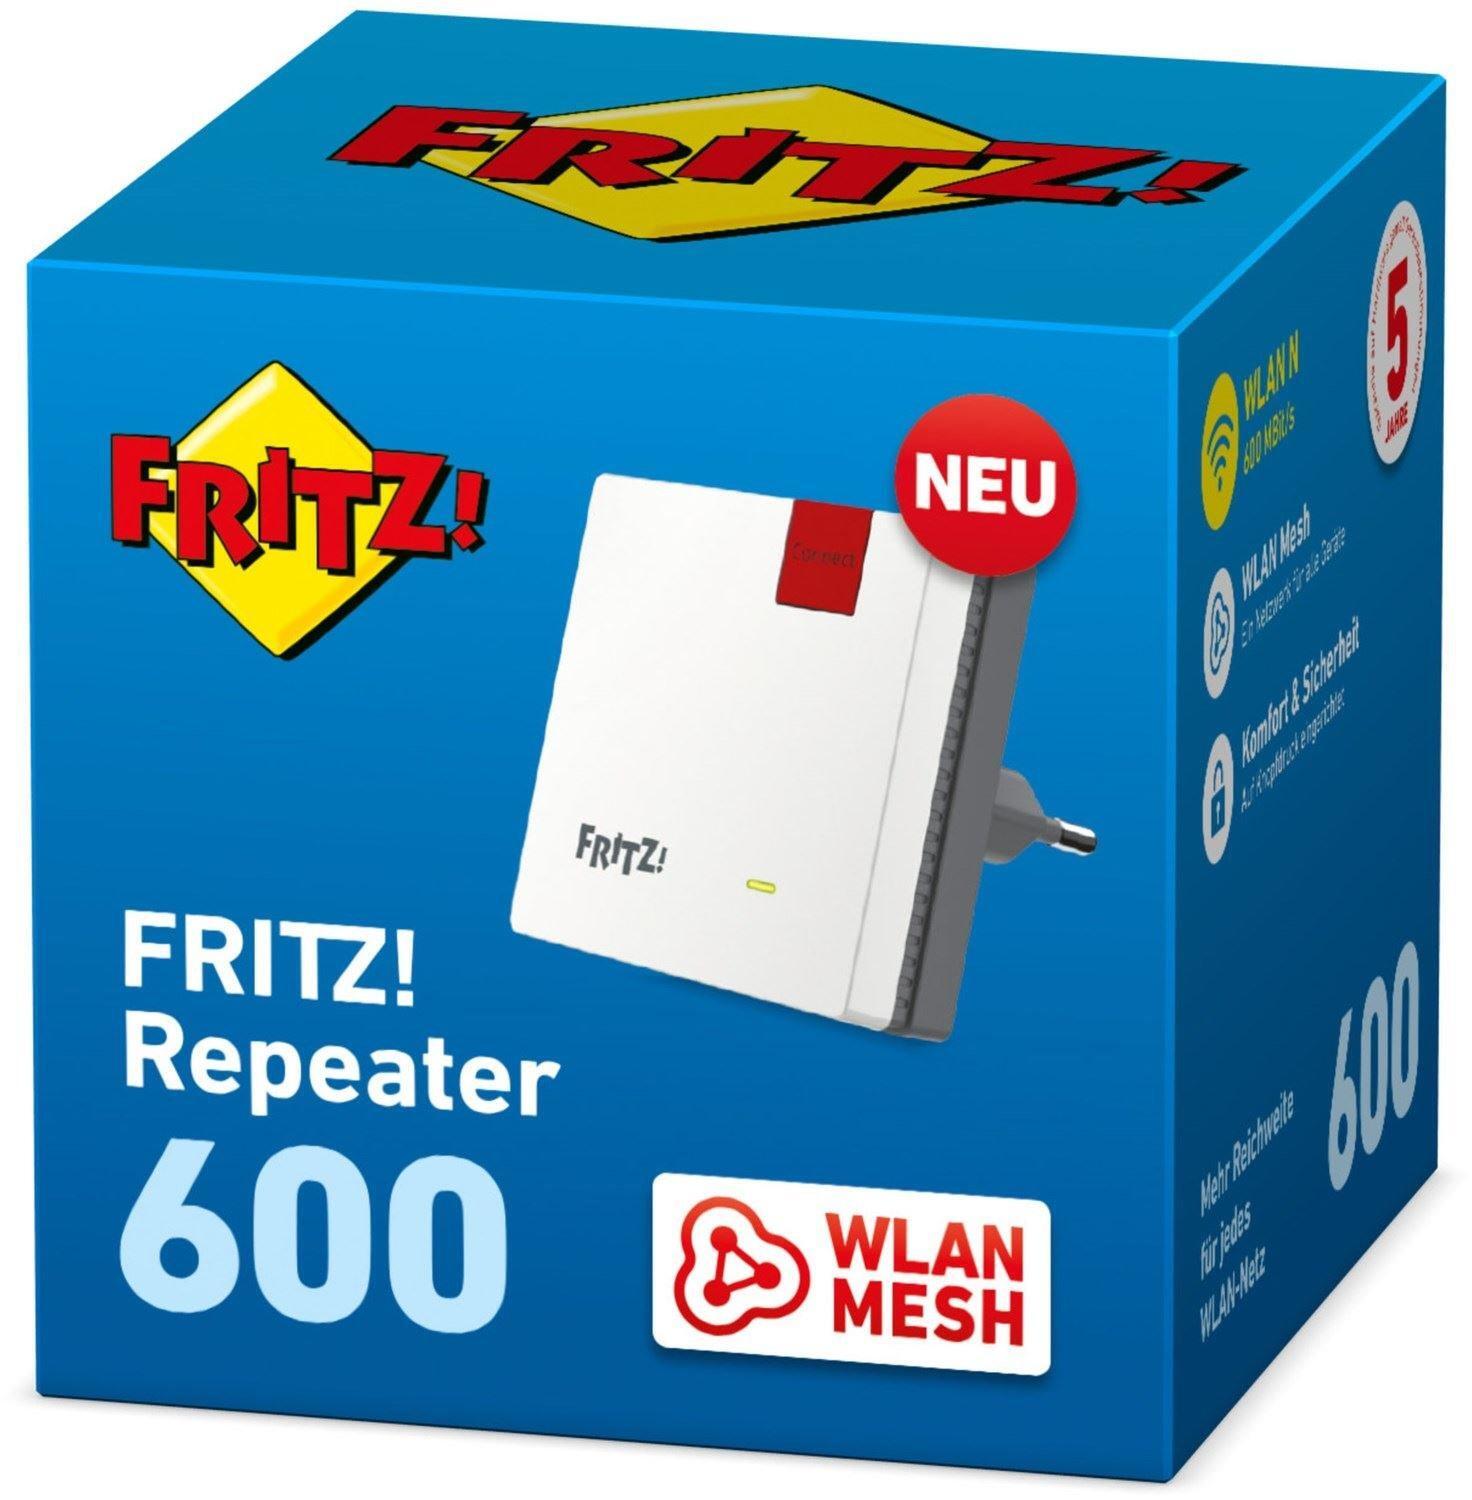 AVM AVM FRITZ! WLAN Mesh Letzshop 600 Repeater 